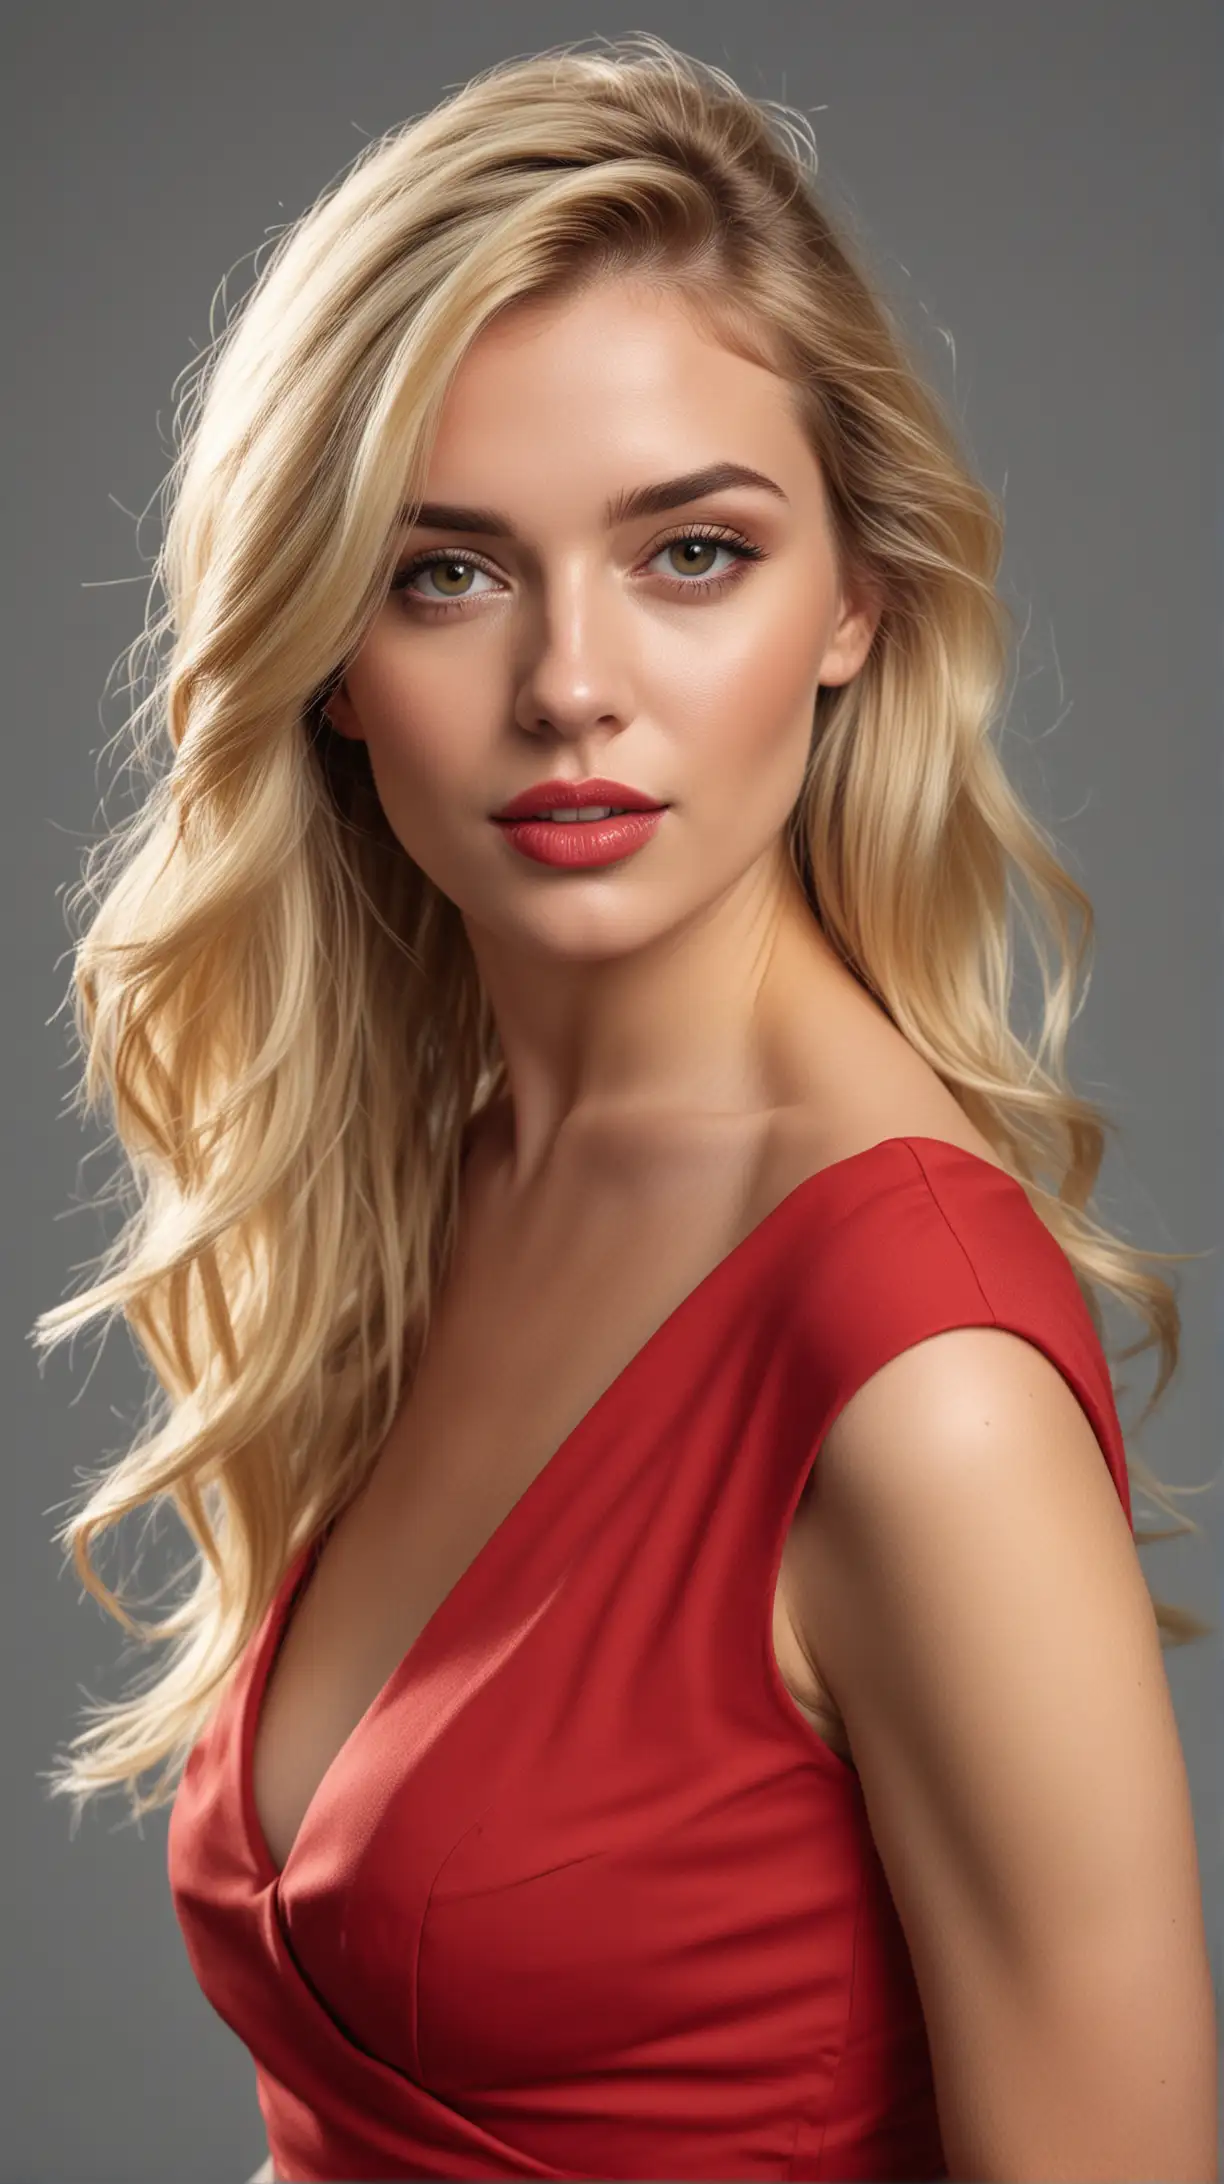 Elegant Woman in Red Dress Against Monochrome Backdrop 4K Ultra HD Portrait